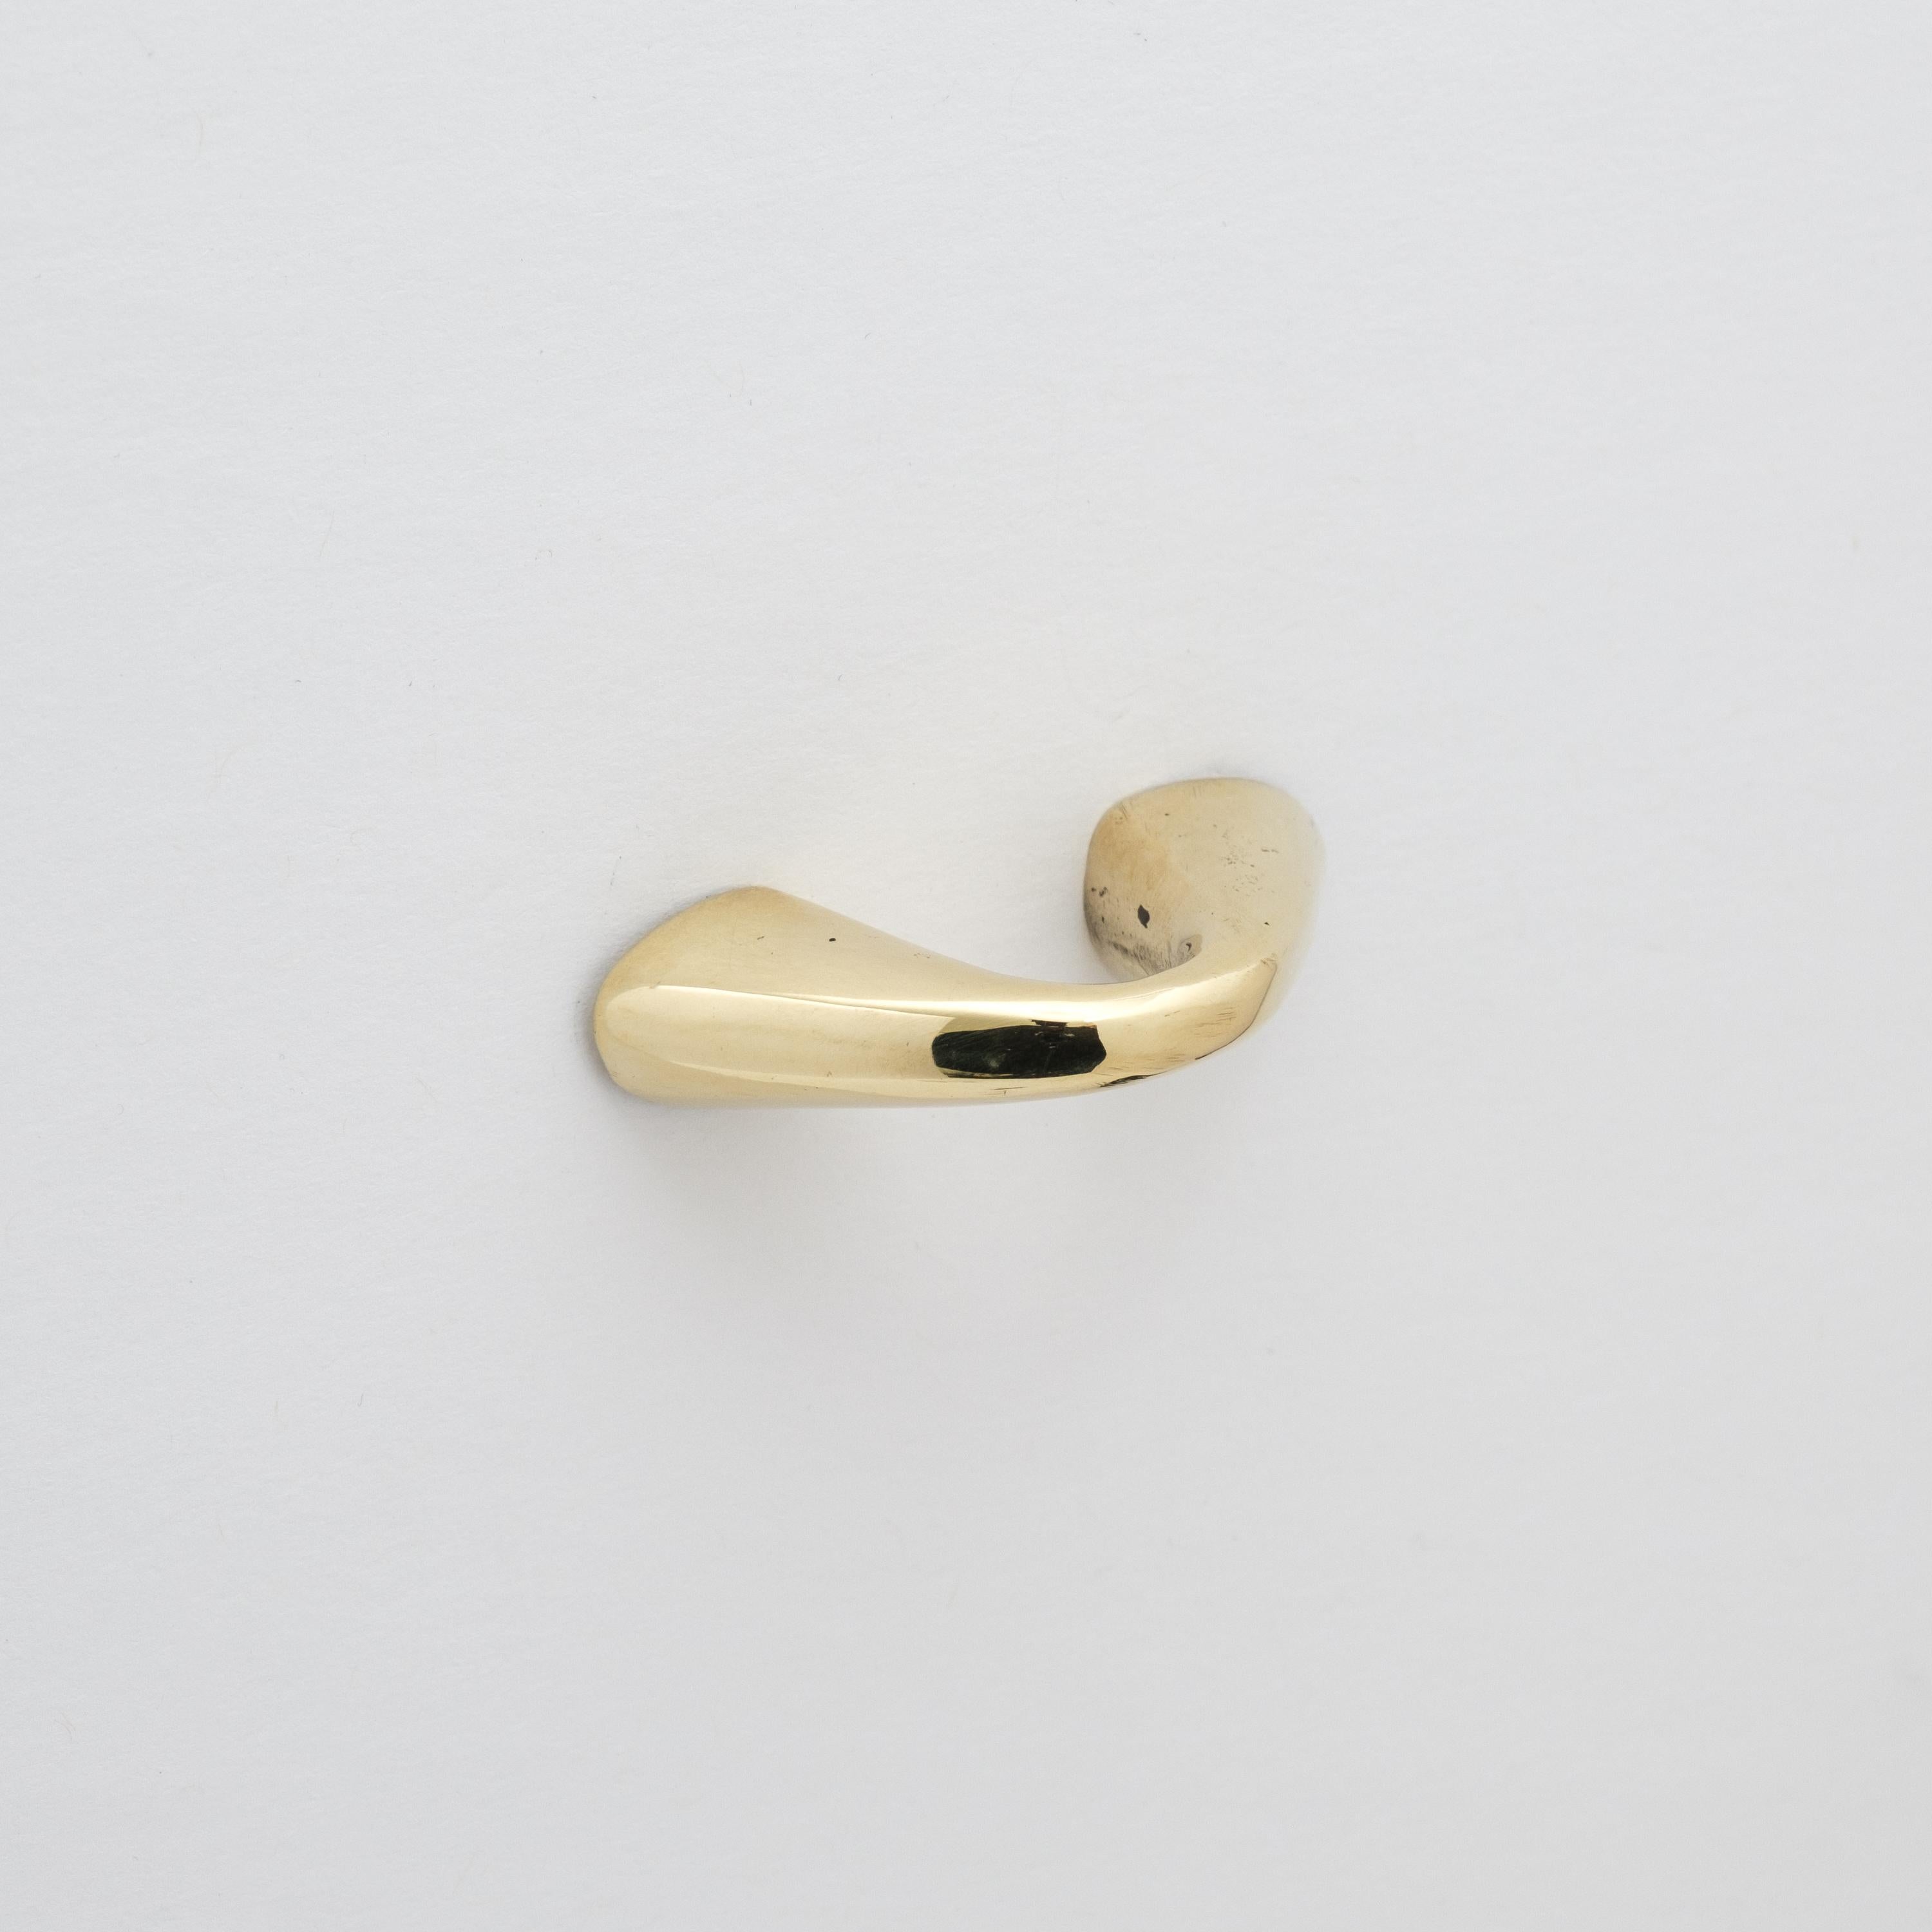 Carl Auböck Modèle #9030-1 tirette de tiroir en laiton poli.

Conçue dans les années 1950, cette tirette viennoise polyvalente et minimaliste est exécutée en laiton poli par Werkstätte Carl Auböck, Autriche. Son design minimaliste allie forme épurée